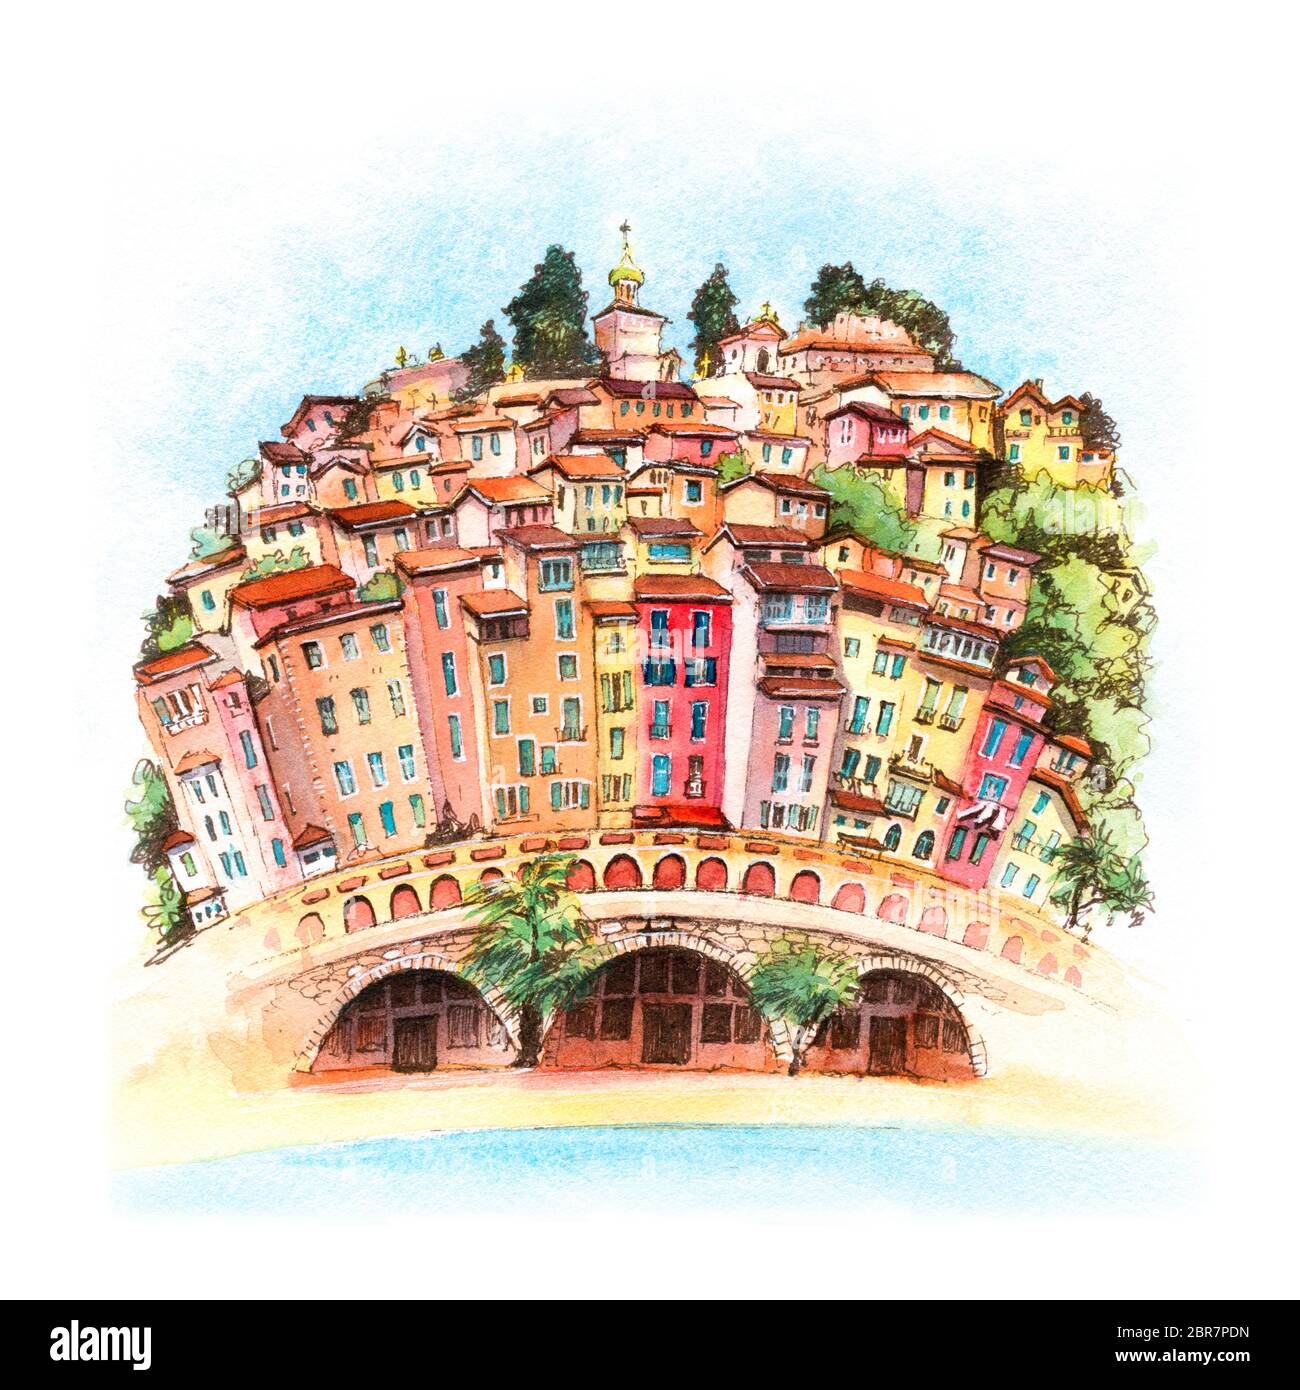 Aquarelle colorées de la vieille ville et à la plage sous le soleil de Menton, perle de la France, sur la côte d'Azur, France Banque D'Images